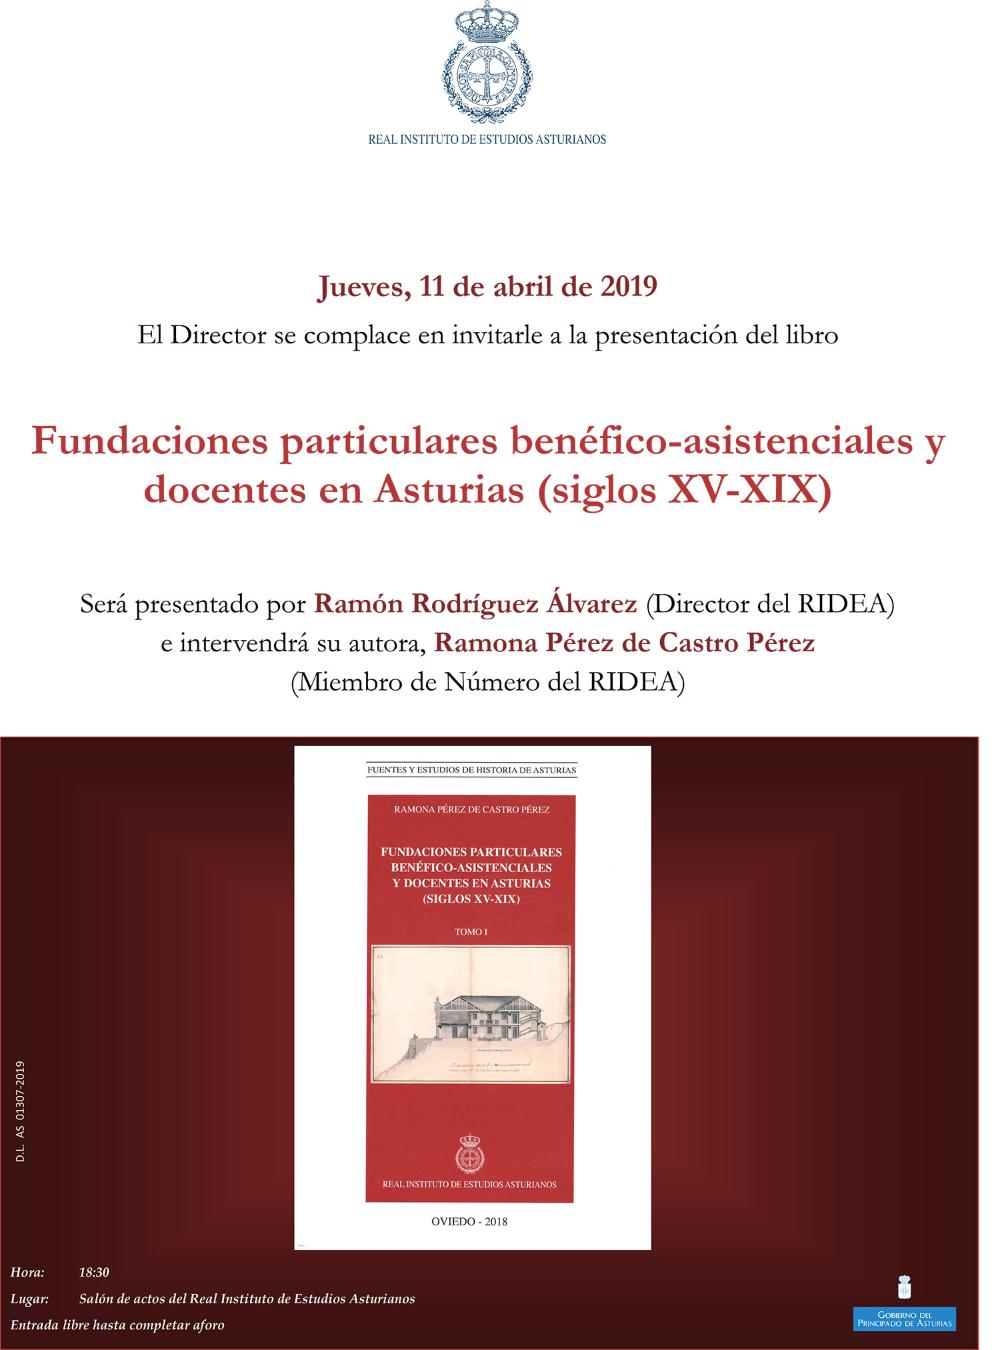 Imagen - Presentación del libro Fundaciones particulares benéfico-asistenciales y docentes en Asturias (siglos XV-XIX)